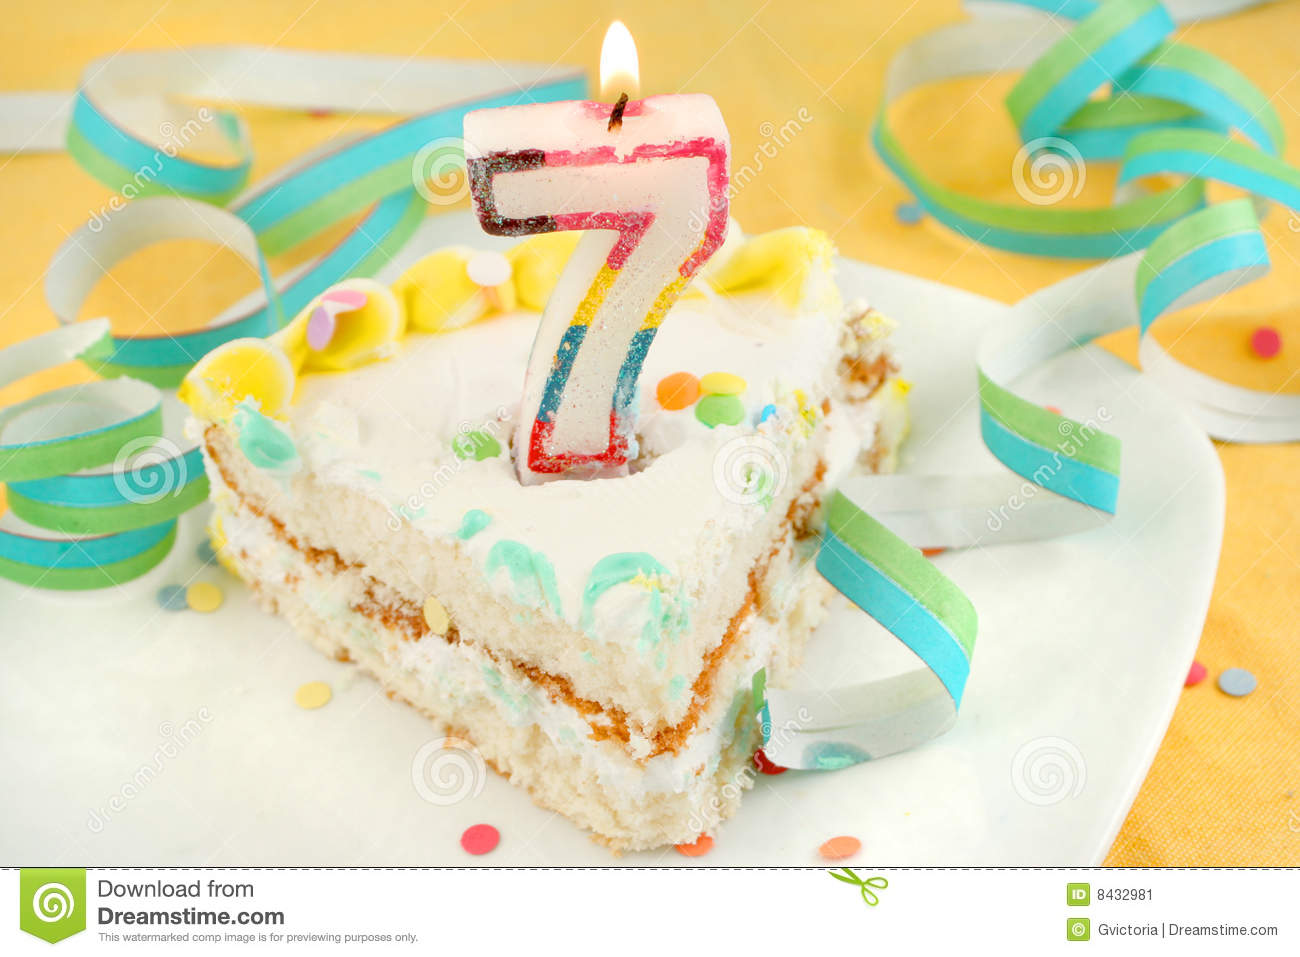 Neopets 7th Birthday Cake